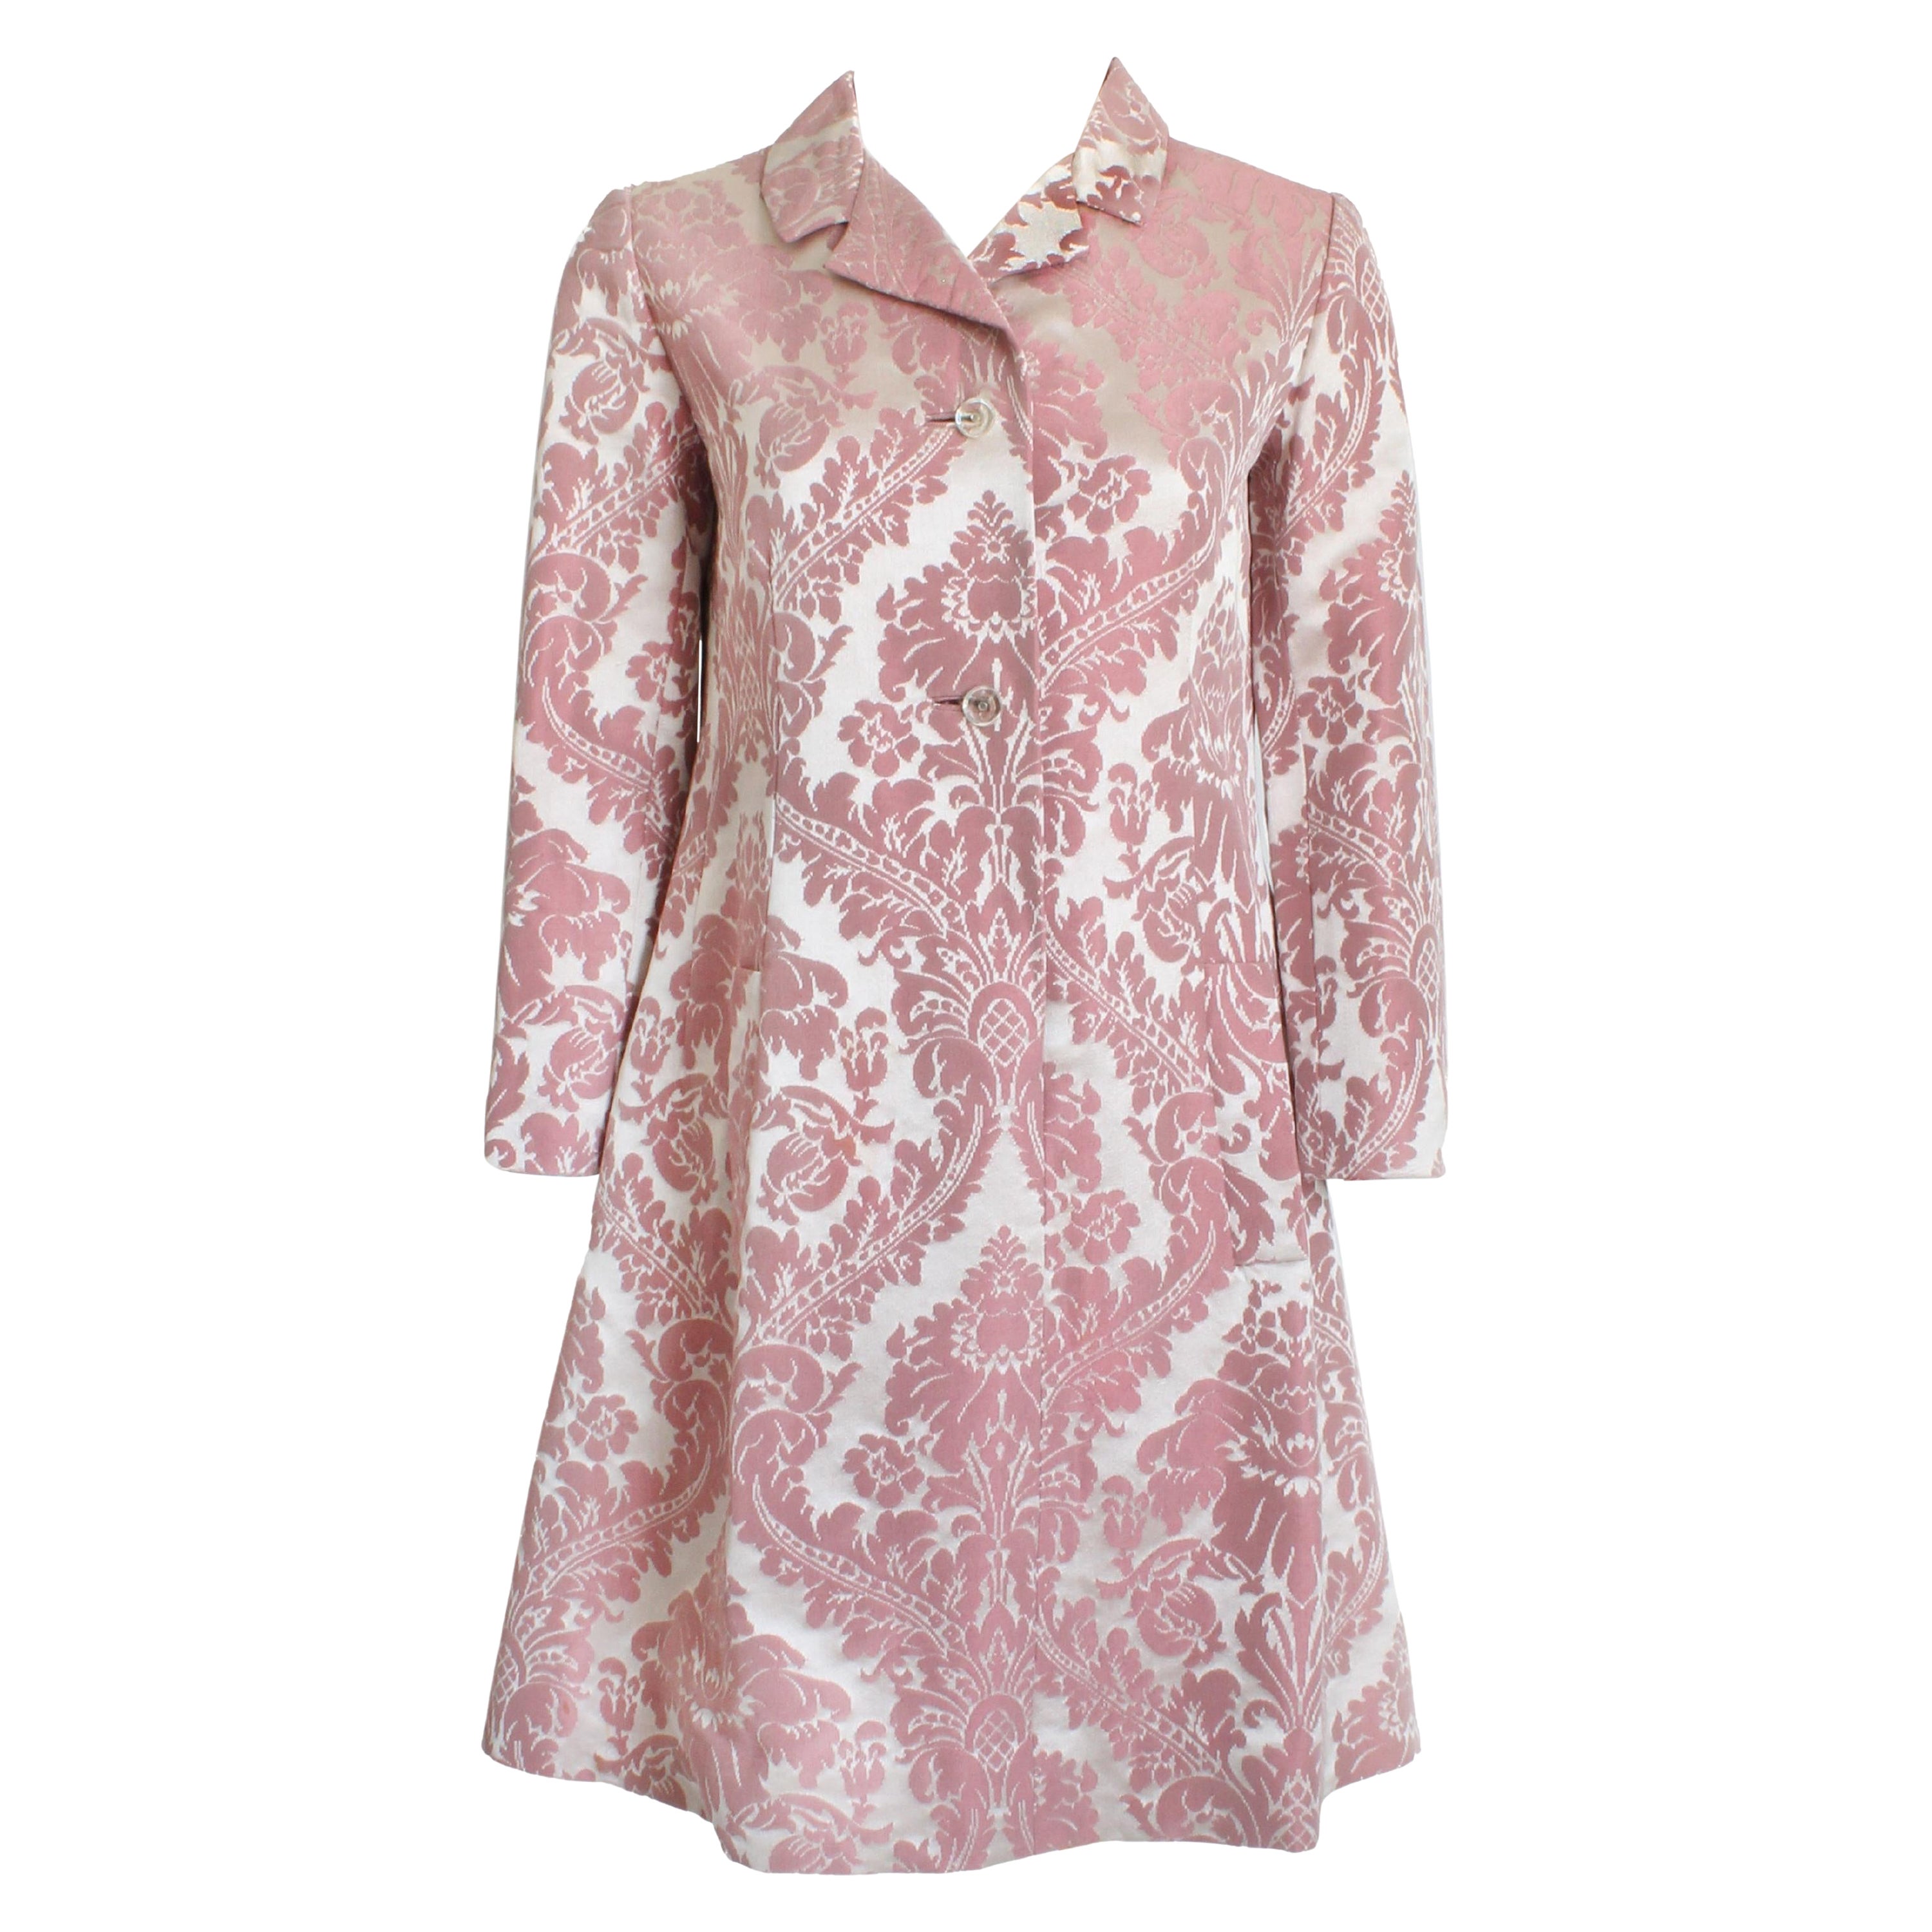 Cette fabuleuse robe-manteau a été réalisée par Chester Weinberg et vendue par la salle ovale de Dayton, très probablement au milieu des années 60.   Fabriqué dans un magnifique damas floral rose, le tissu est d'une brillance incroyable ! Il se